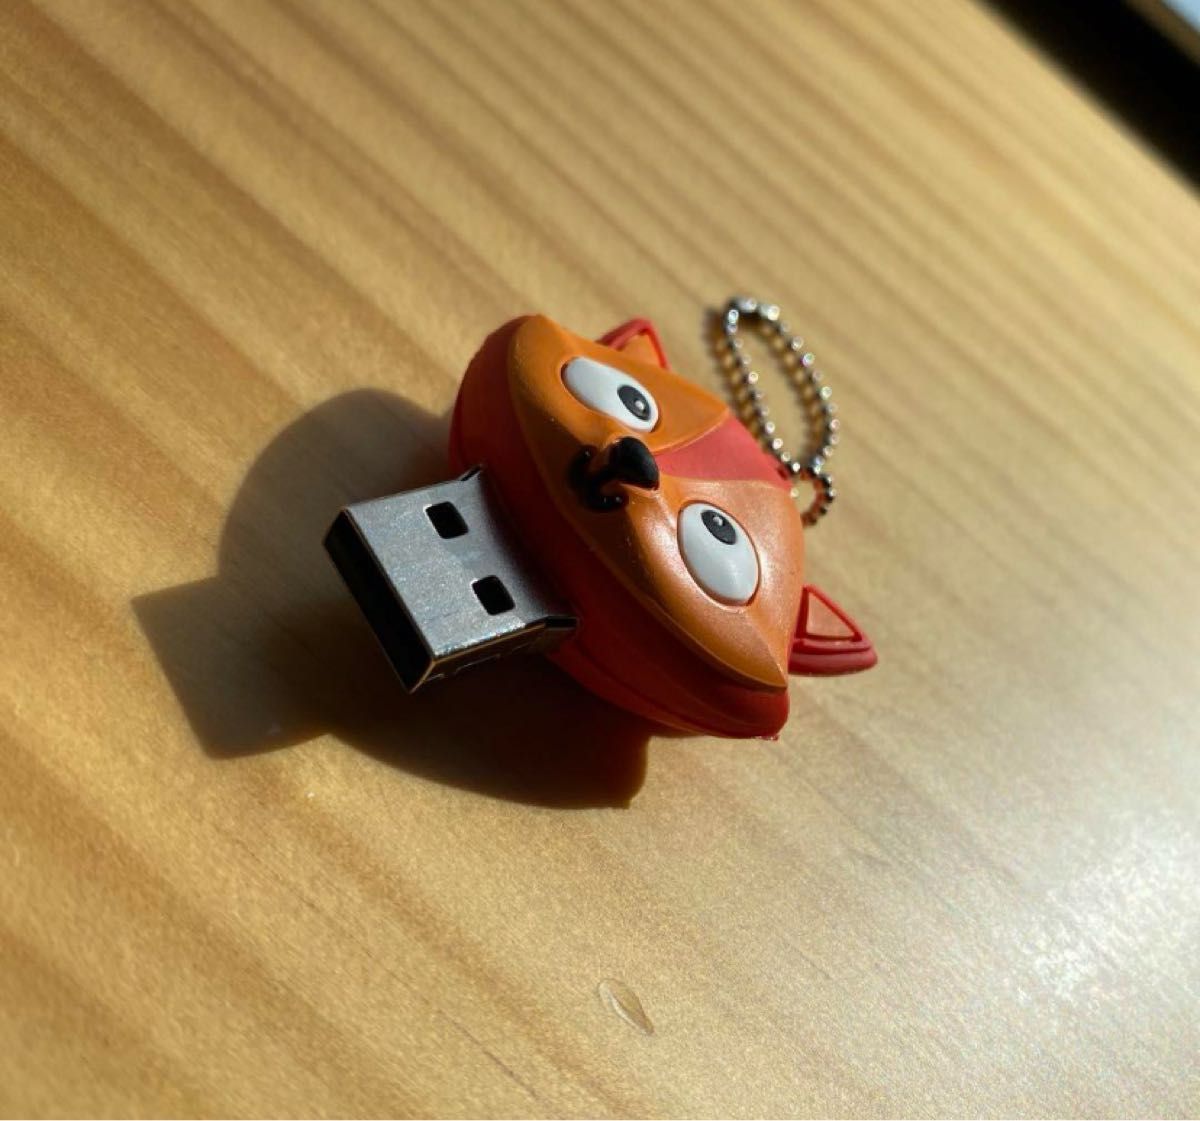 USBフラッシュドライブ 32GB USBかわいい動物のUSBメモリースティック  ペンライブ サムドライブ 子供 大学 ギフト